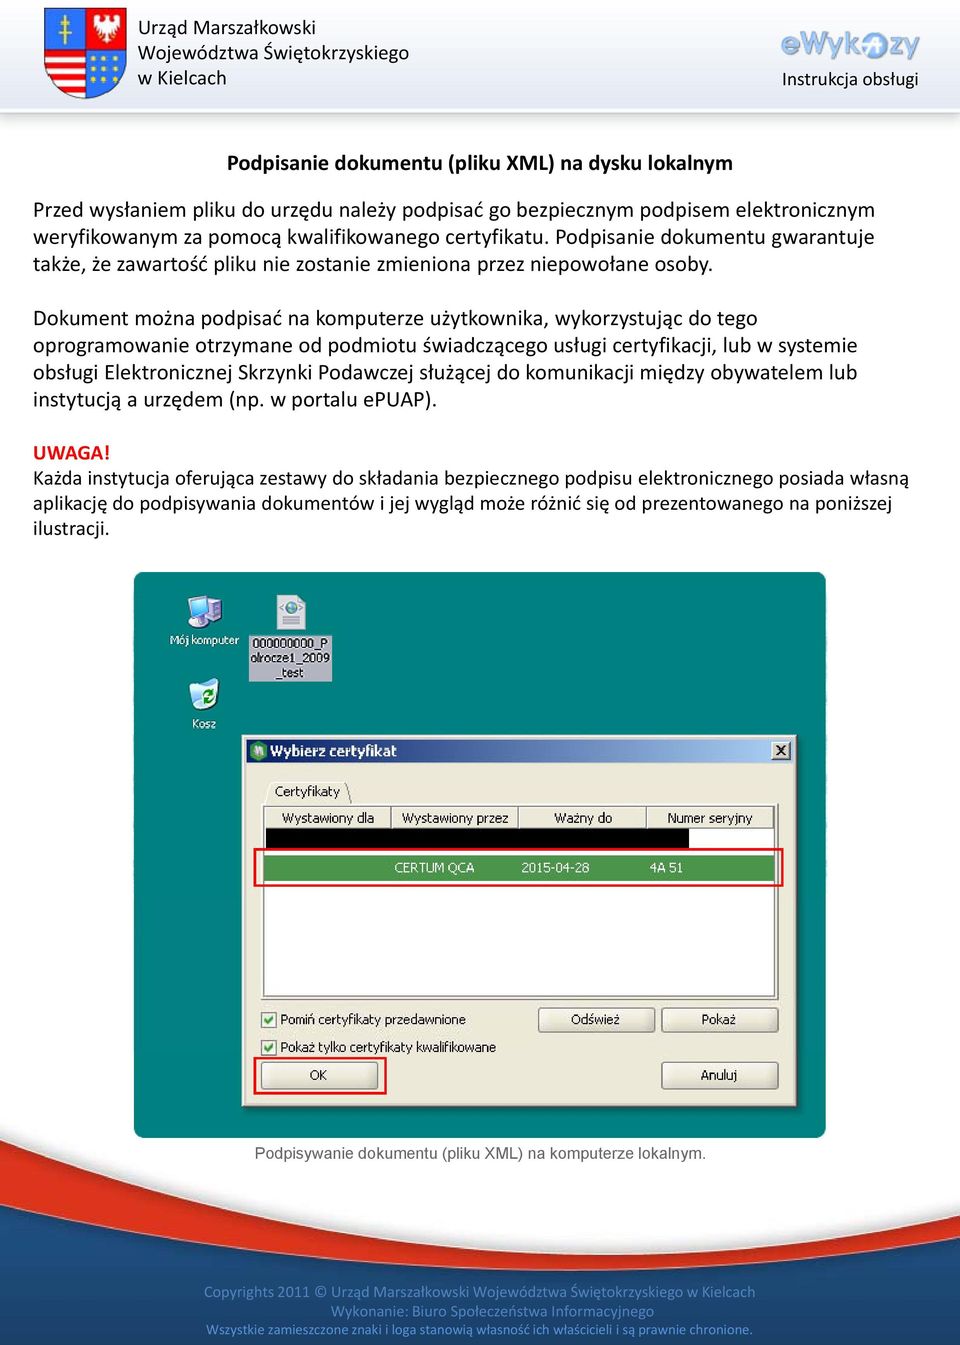 Dokument można podpisać na komputerze użytkownika, wykorzystując do tego oprogramowanie otrzymane od podmiotu świadczącego usługi certyfikacji, lub w systemie obsługi Elektronicznej Skrzynki